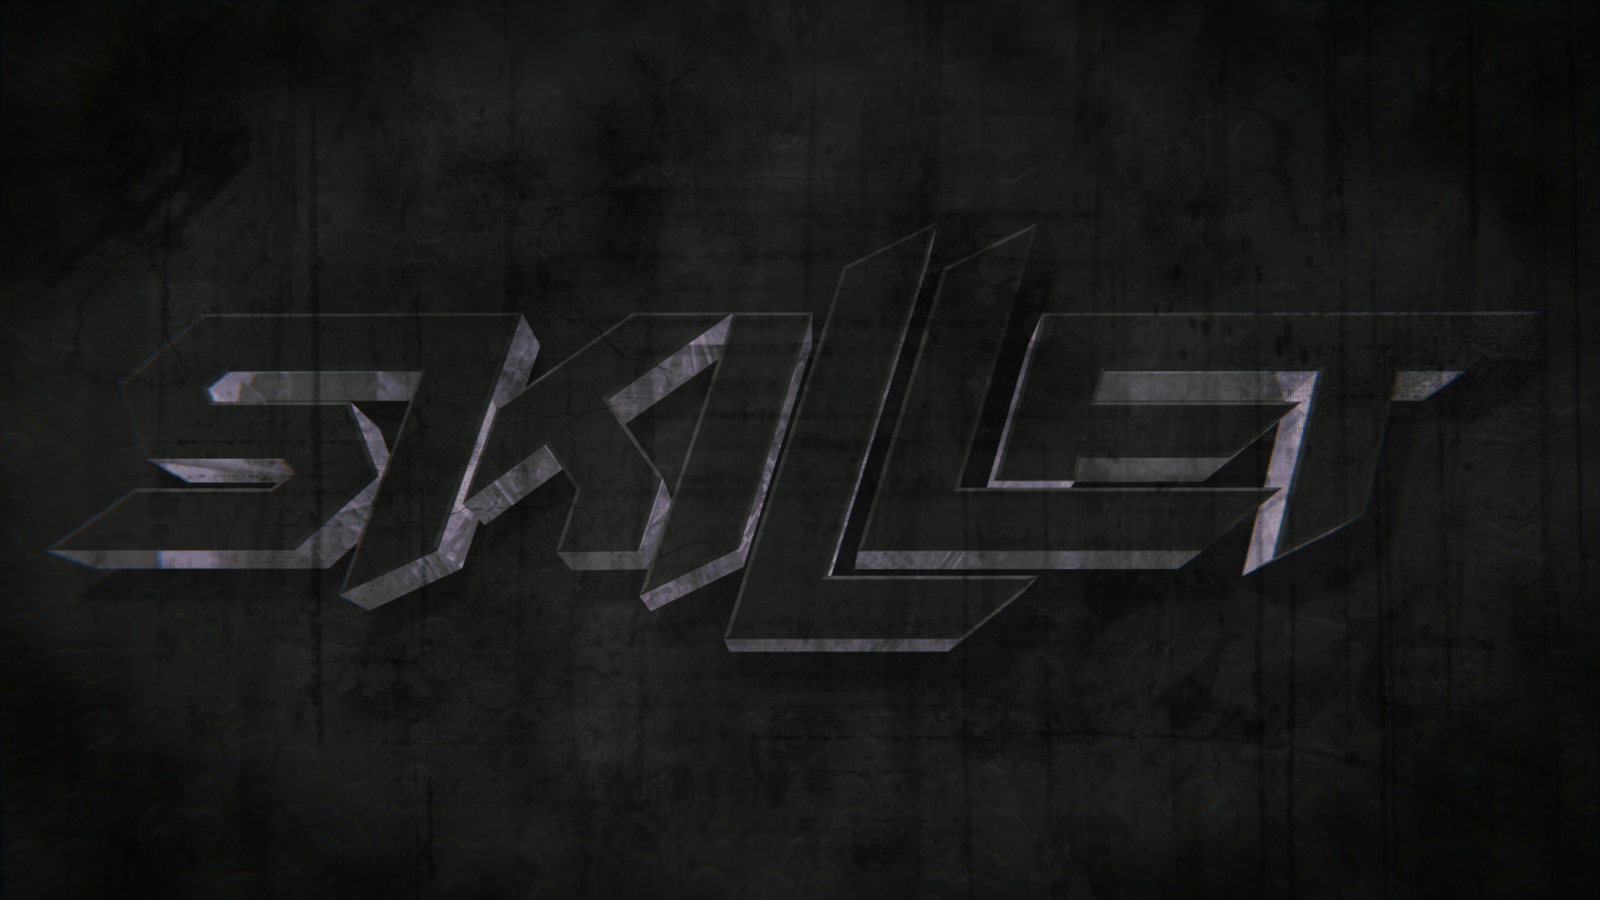 Skillet Logo - SSimpossible's Blender Tutorials: Skillet Band Logo